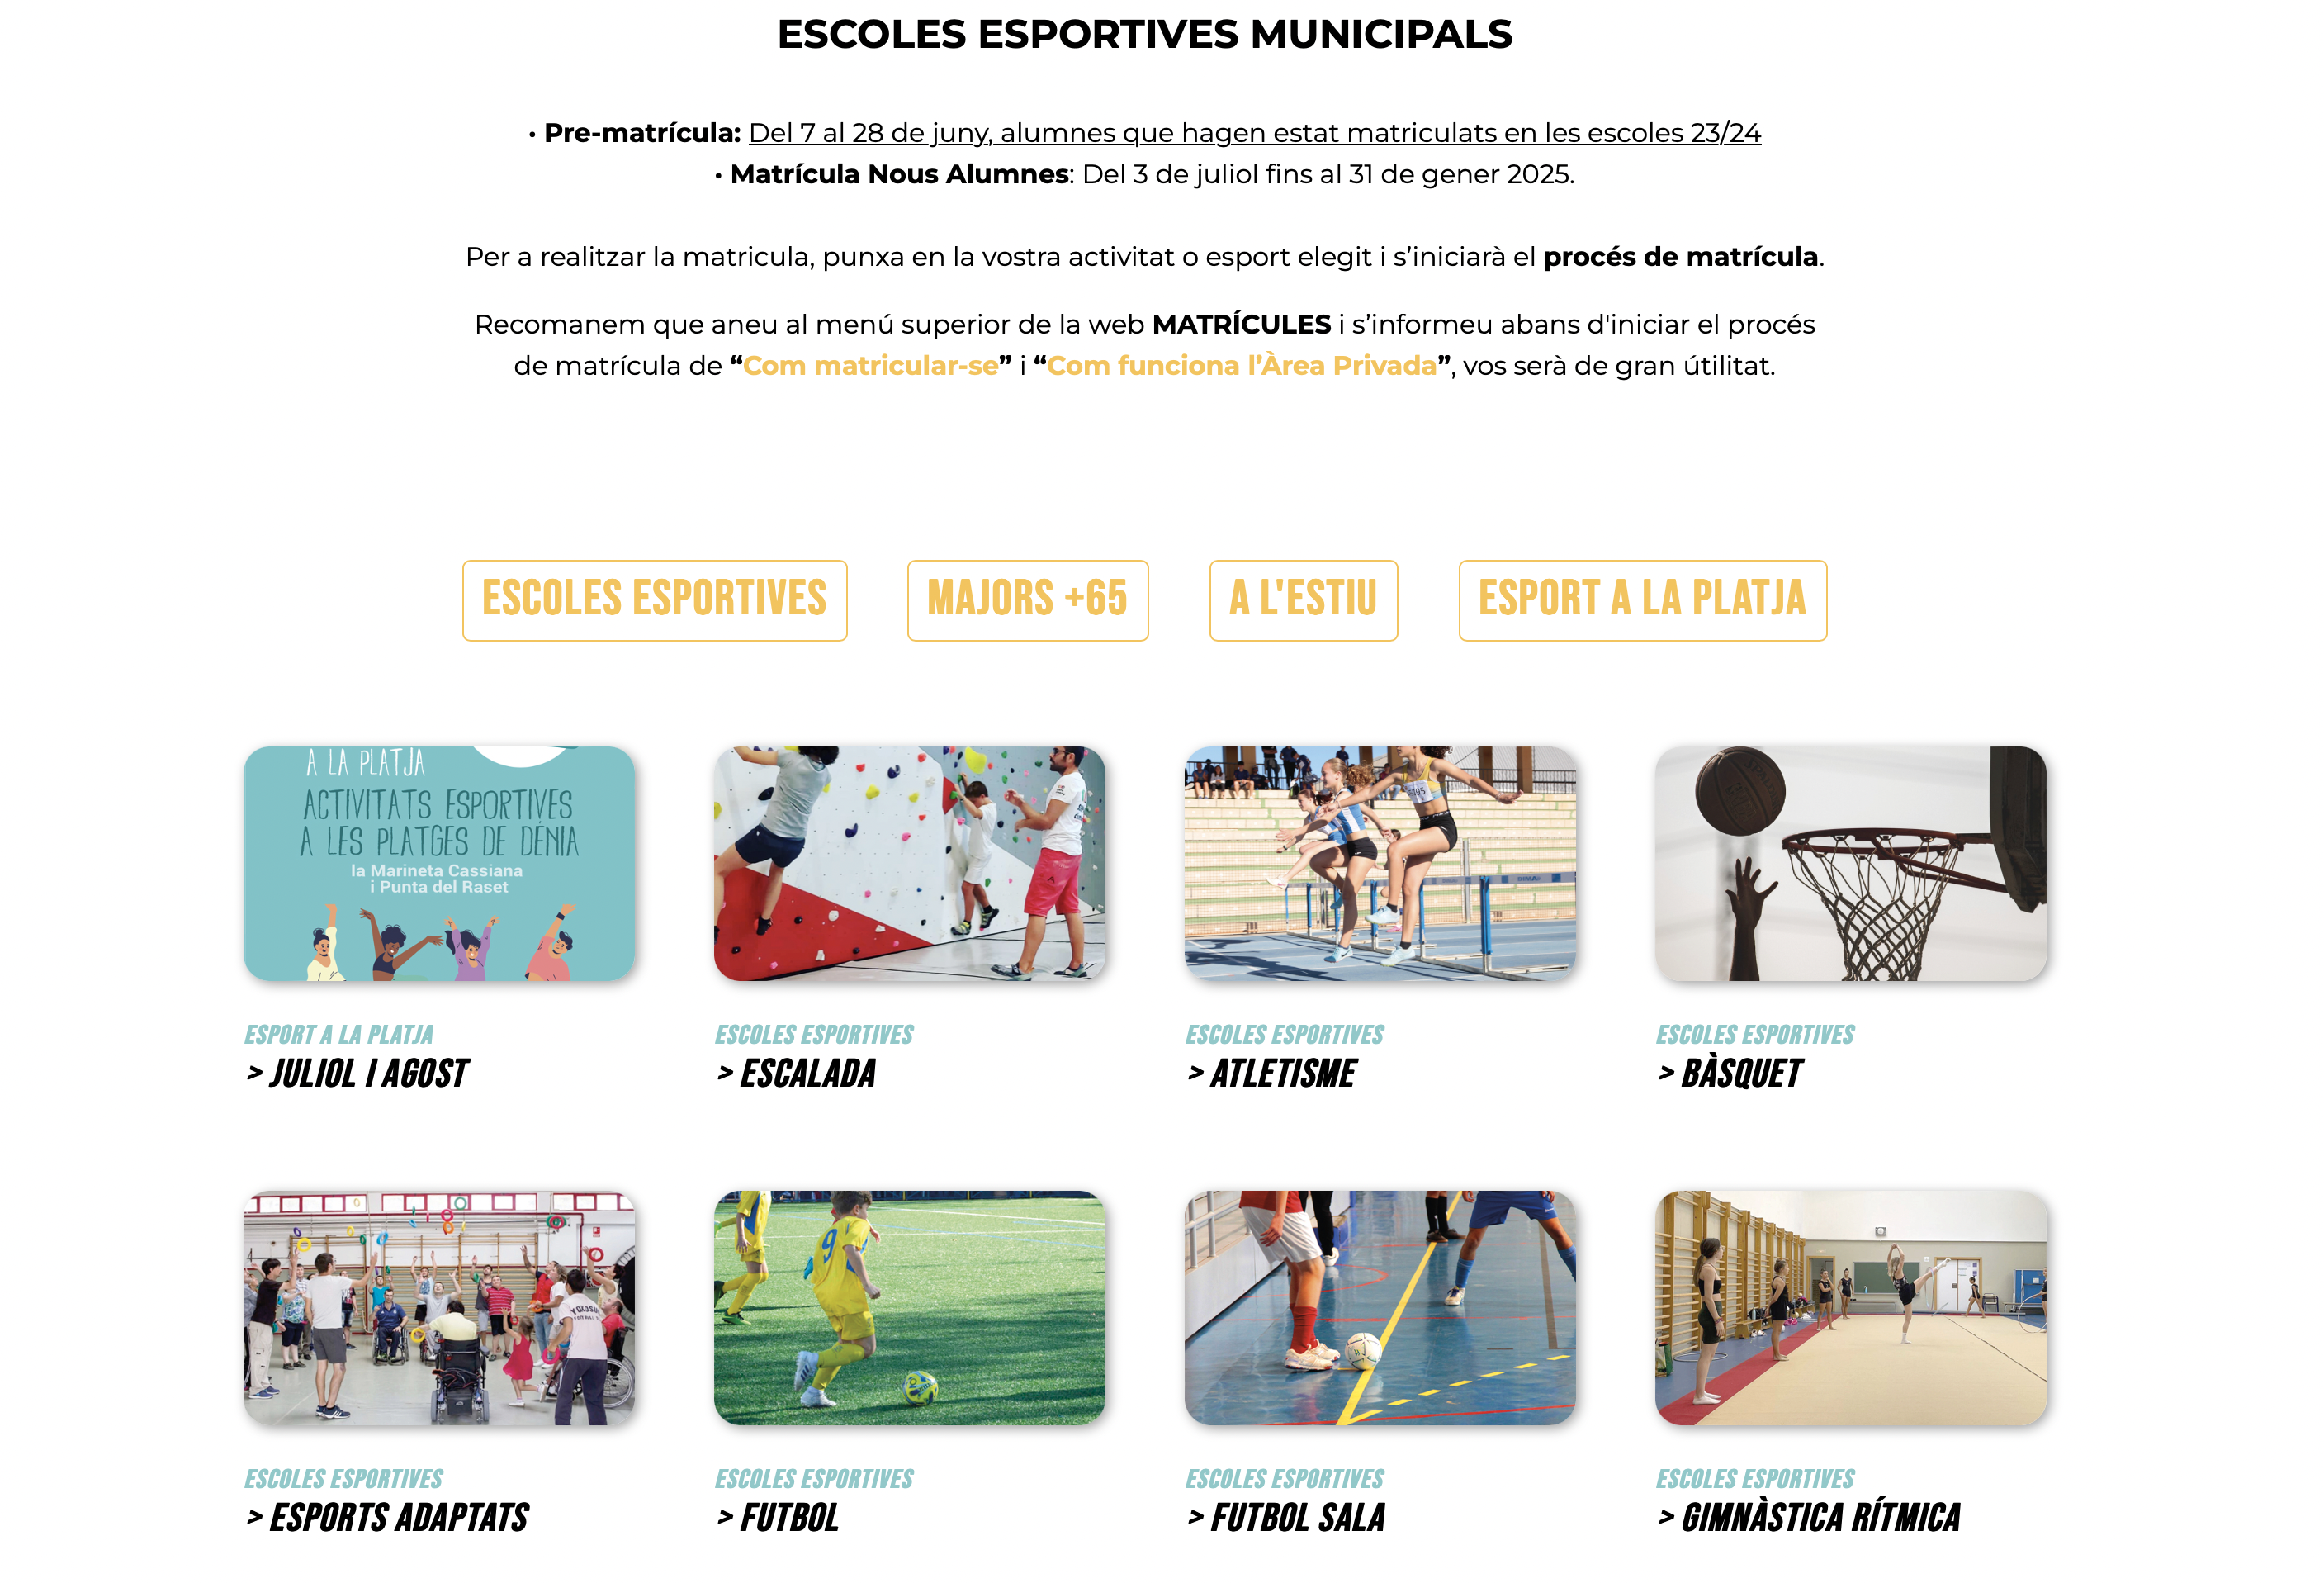  La nueva web de la Concejalía de Deportes facilita los trámites de matriculación en las escuelas deportivas municipales 